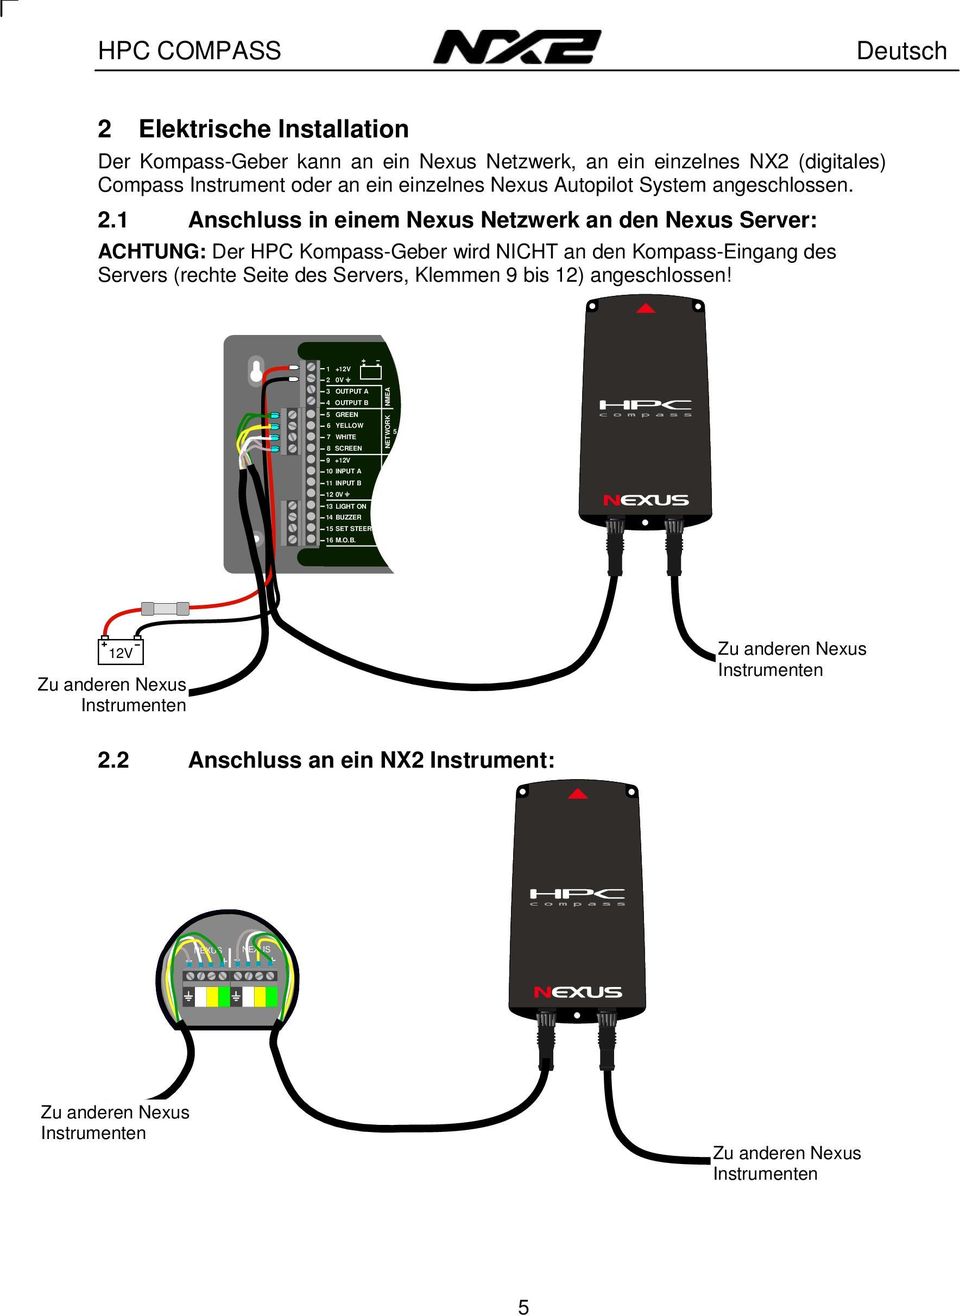 1 Anschluss in einem Nexus Netzwerk an den Nexus Server: ACHTUNG: Der HPC Kompass-Geber wird NICHT an den Kompass-Eingang des Servers (rechte Seite des Servers, Klemmen 9 bis 12)